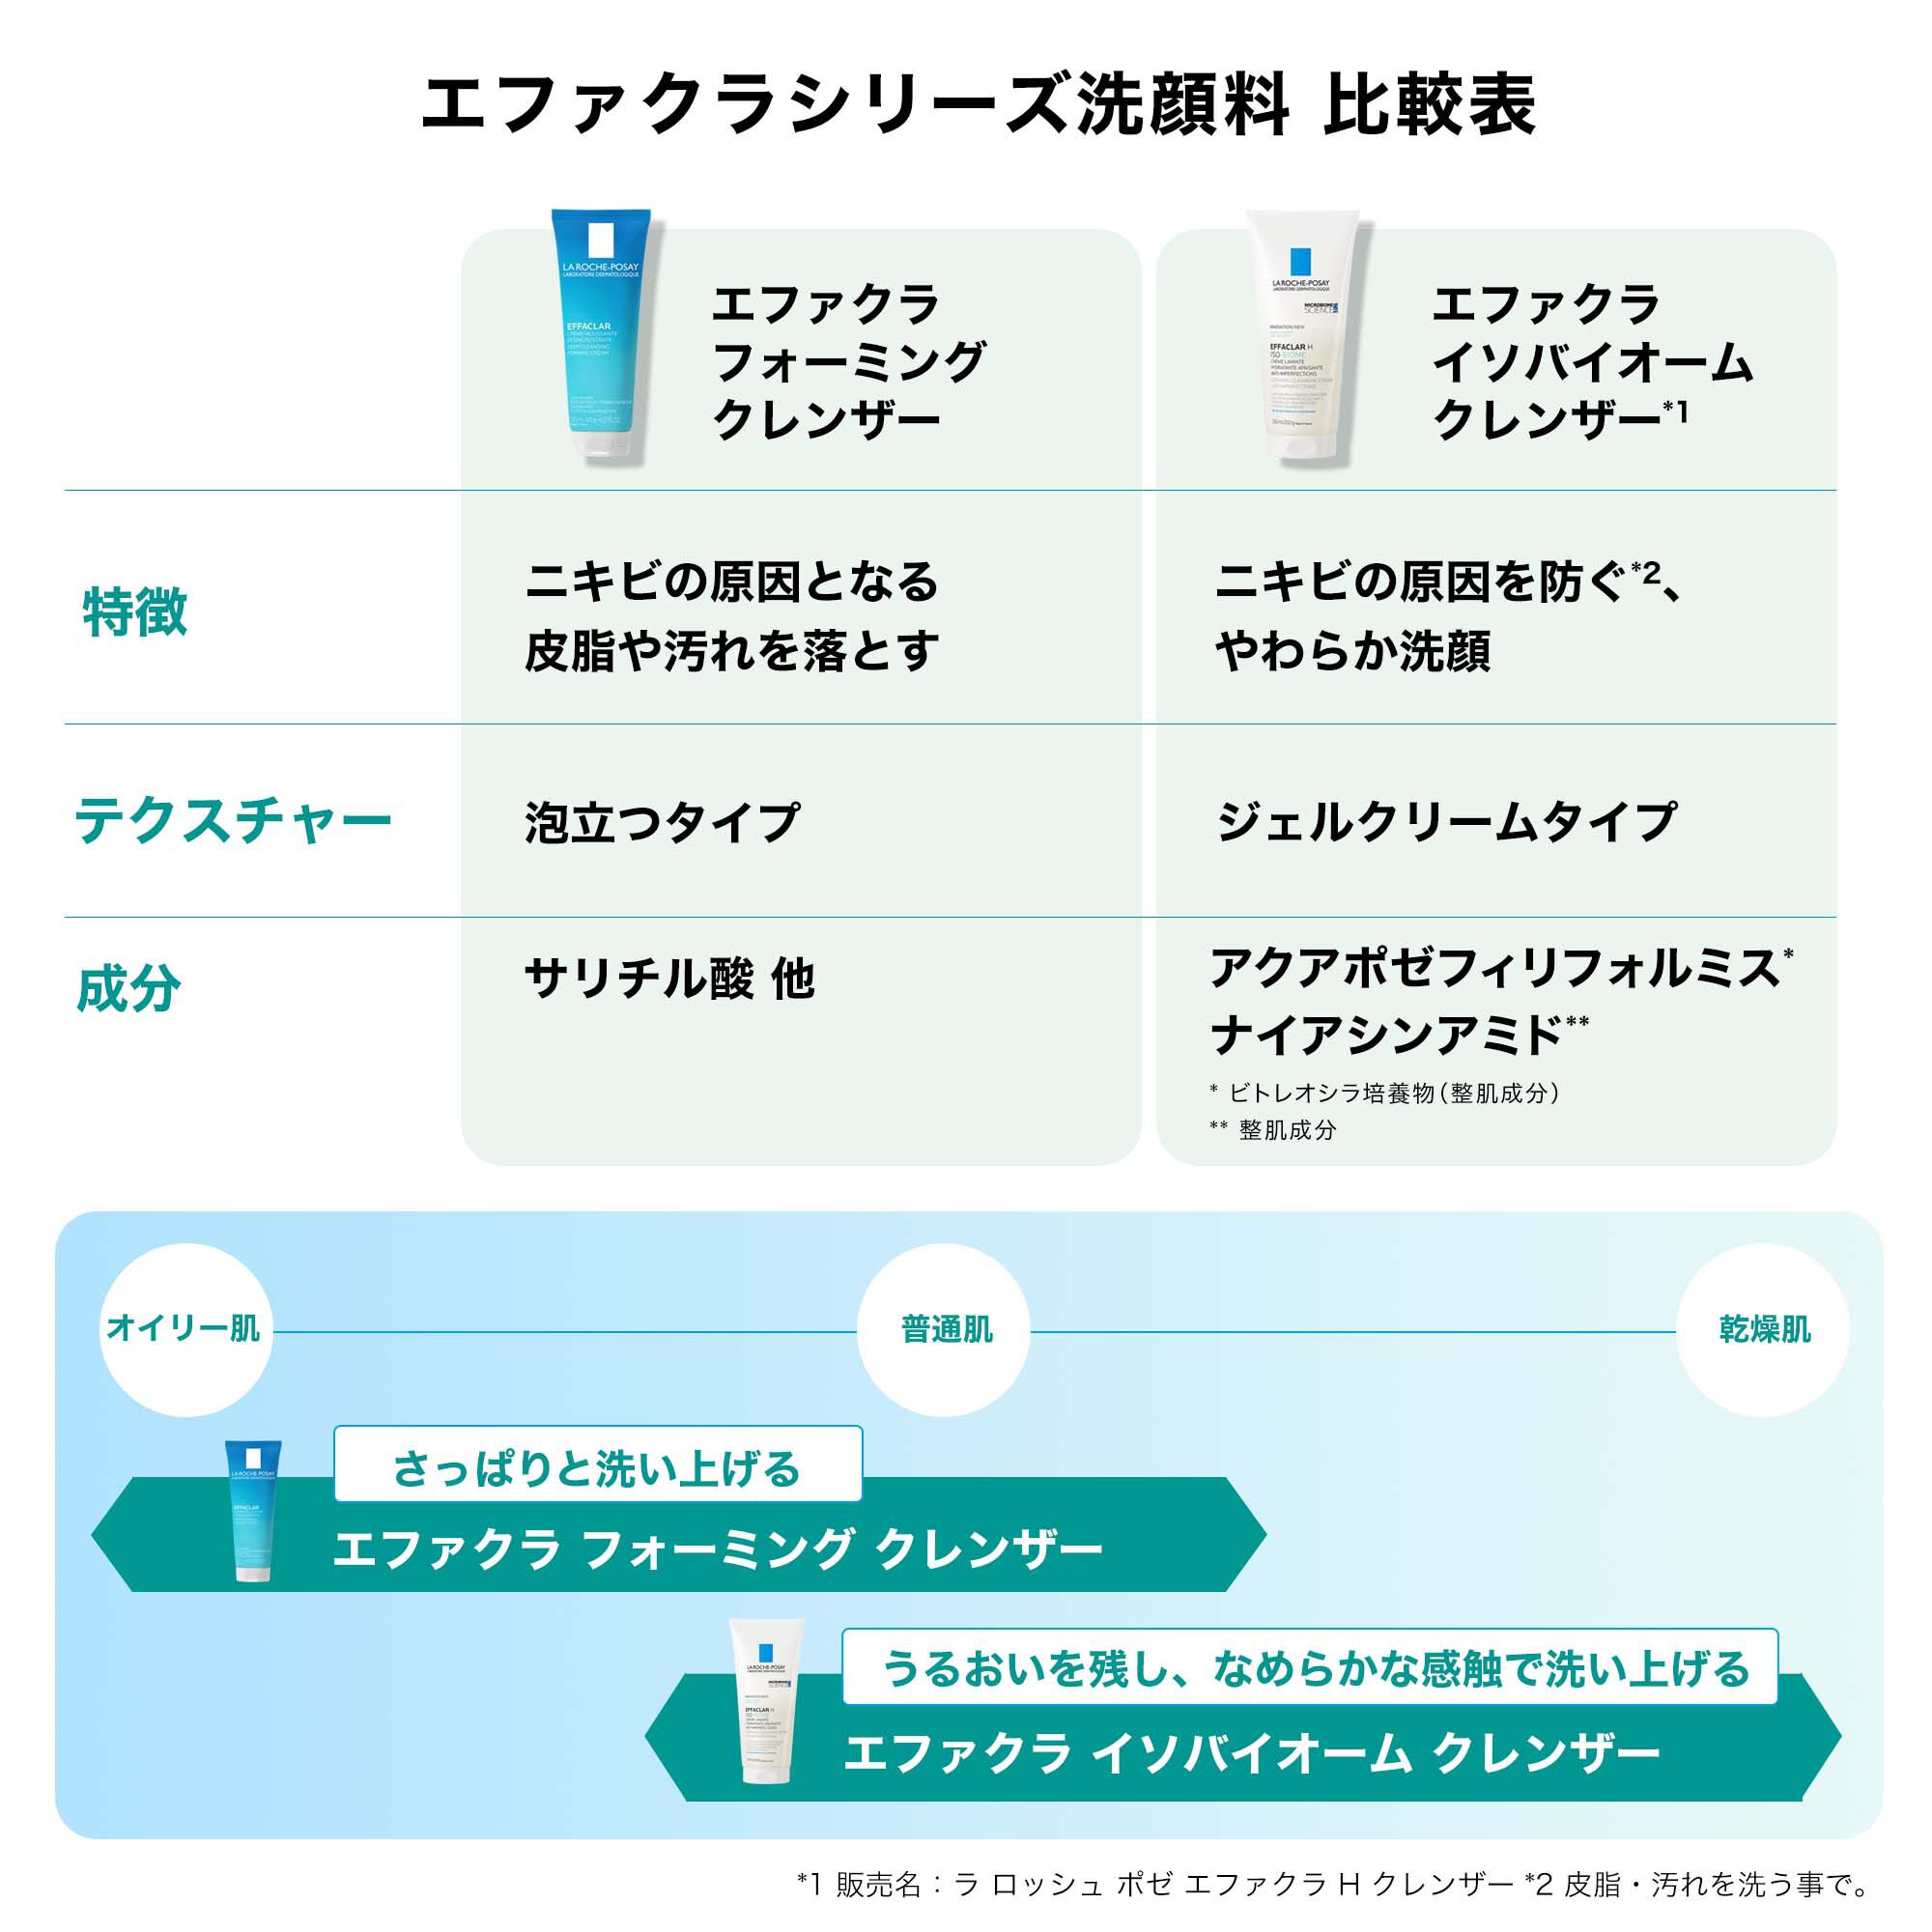 洗顔フォーム】エファクラ イソバイオーム クレンザーの製品情報 